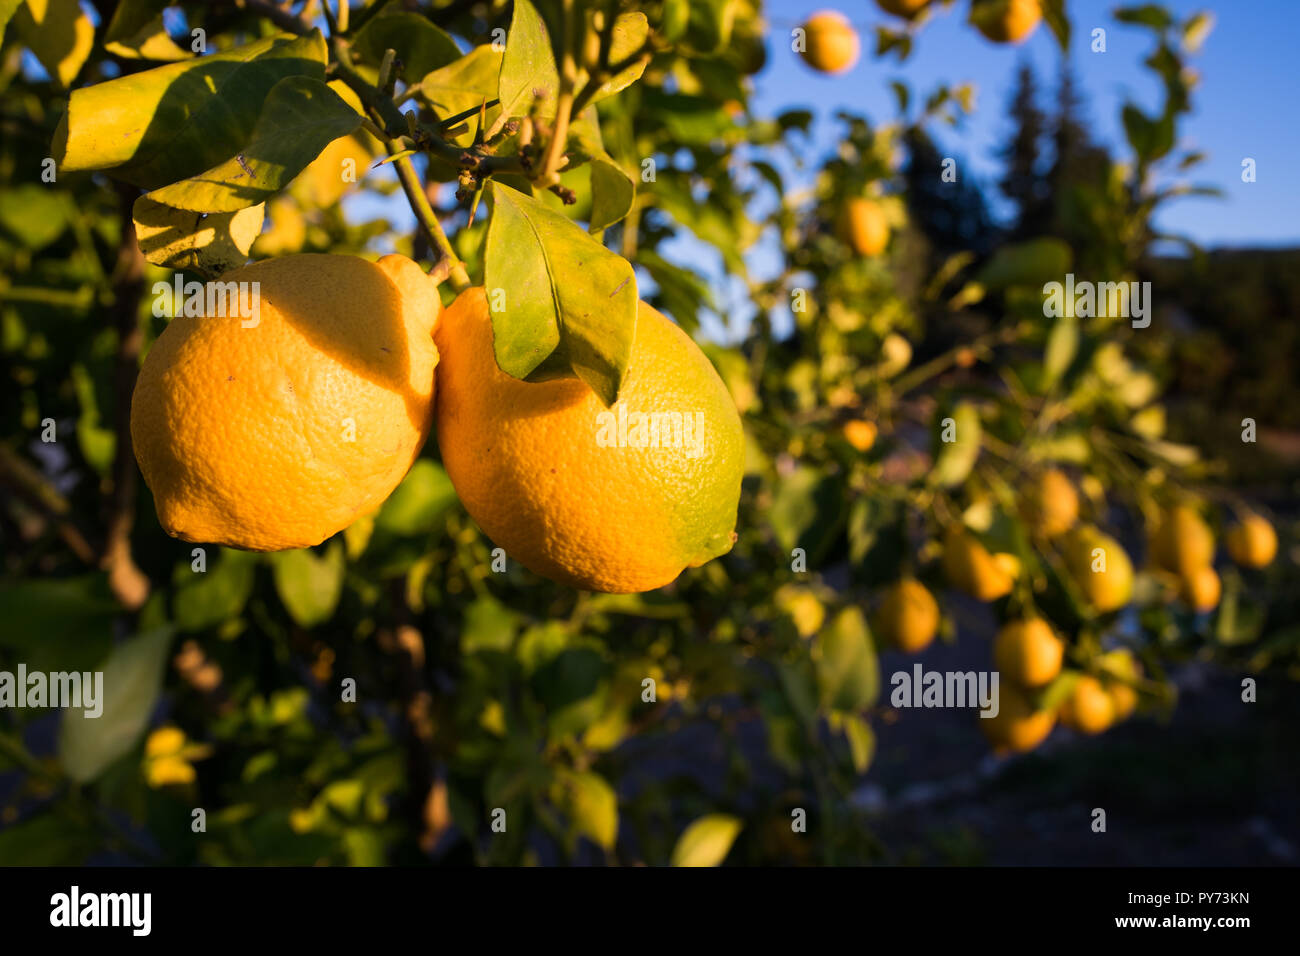 Un close-up di due limoni su un ramo di albero con un albero di limone pieno di frutta nel retro in una calda serata sun Foto Stock